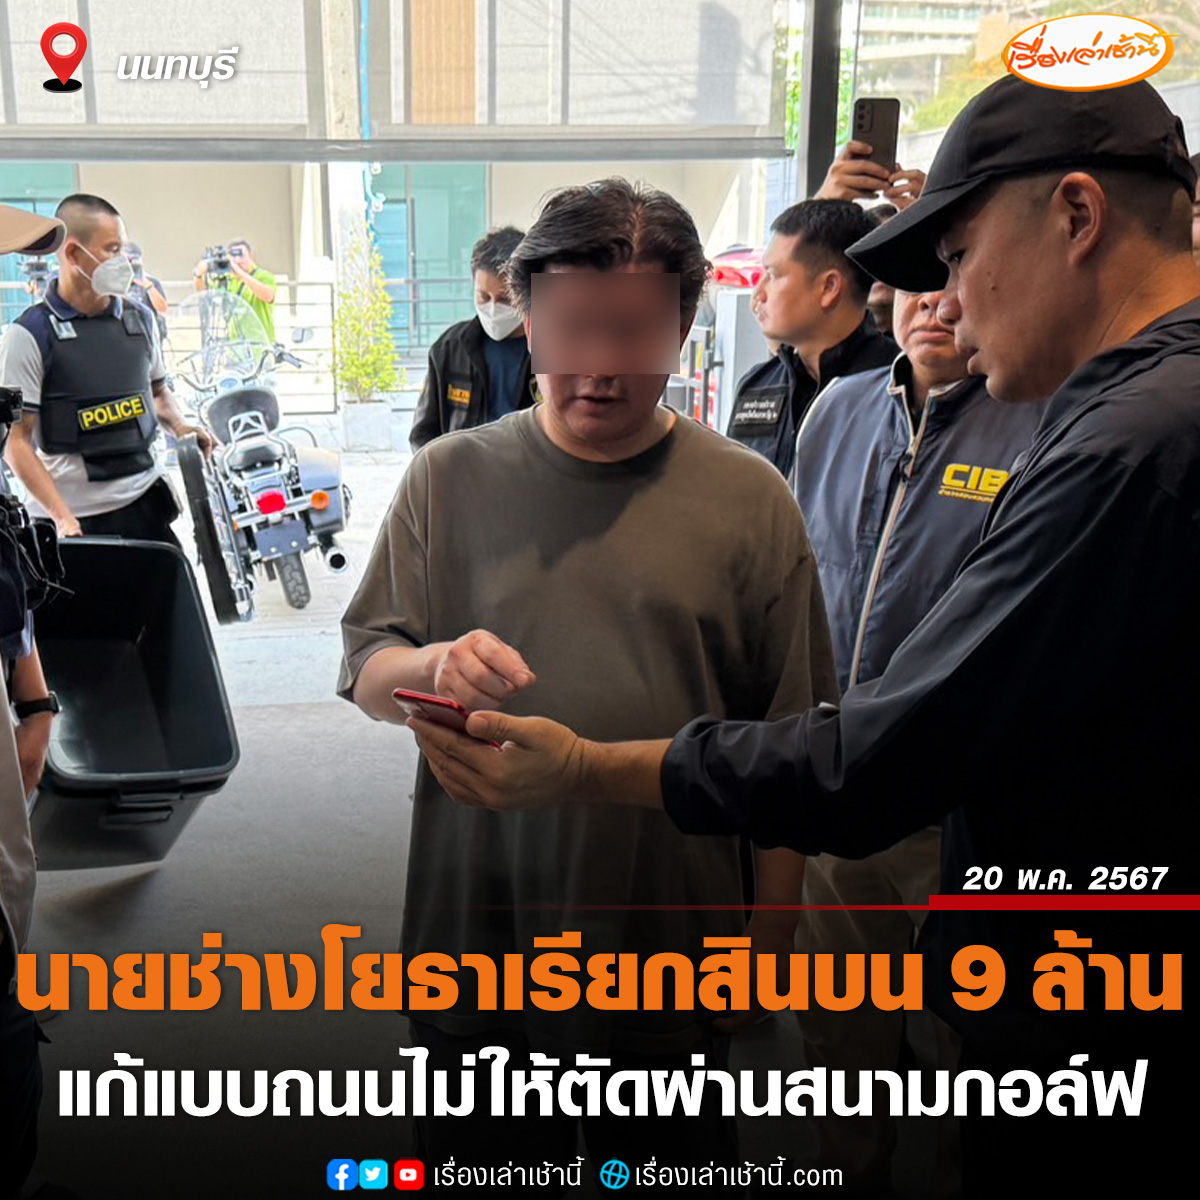 บุกจับนายช่างโยธา กทม. เรียกรับสินบน 9 ล้านบาท แก้แบบถนนไม่ให้ตัดผ่านสนามกอล์ฟ

อ่านข่าว : ch3plus.com/news/crime/mor…

#เรื่องเล่าเช้านี้ #ข่าวช่อง3
#ข่าวอาชญากรรม #นนทบุรี